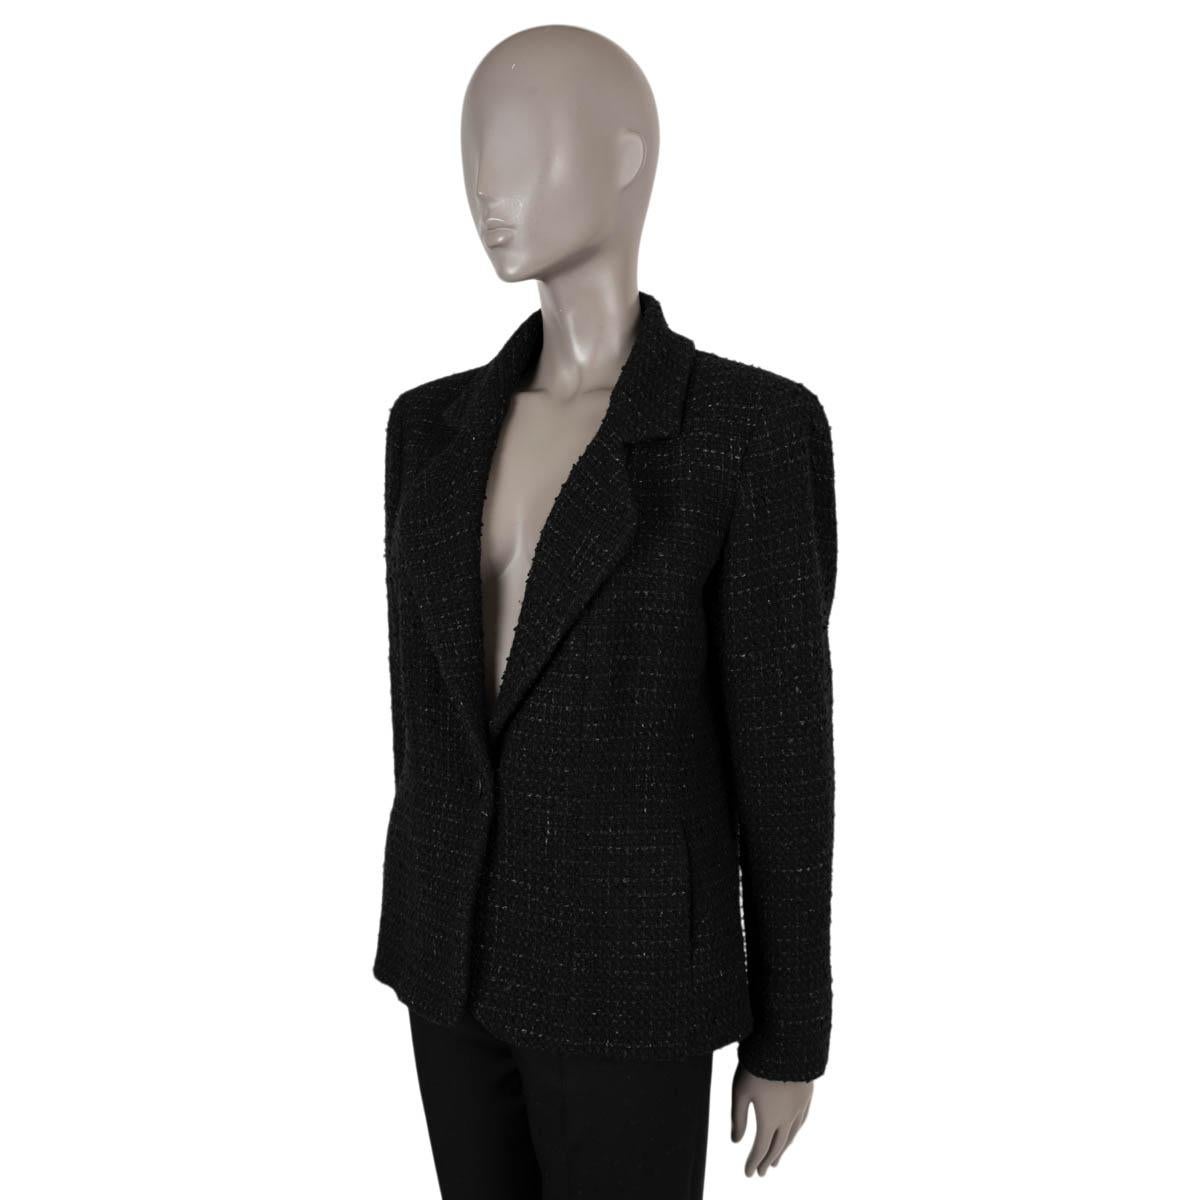 Veste en tweed classique à un bouton 100% authentique de Chanel en laine mélangée noire (86%), polyamide (10%) et polyester (4%). Le modèle comporte un bouton CC sur le devant, deux boutons sur chaque manchette et deux poches fendues sur le côté.